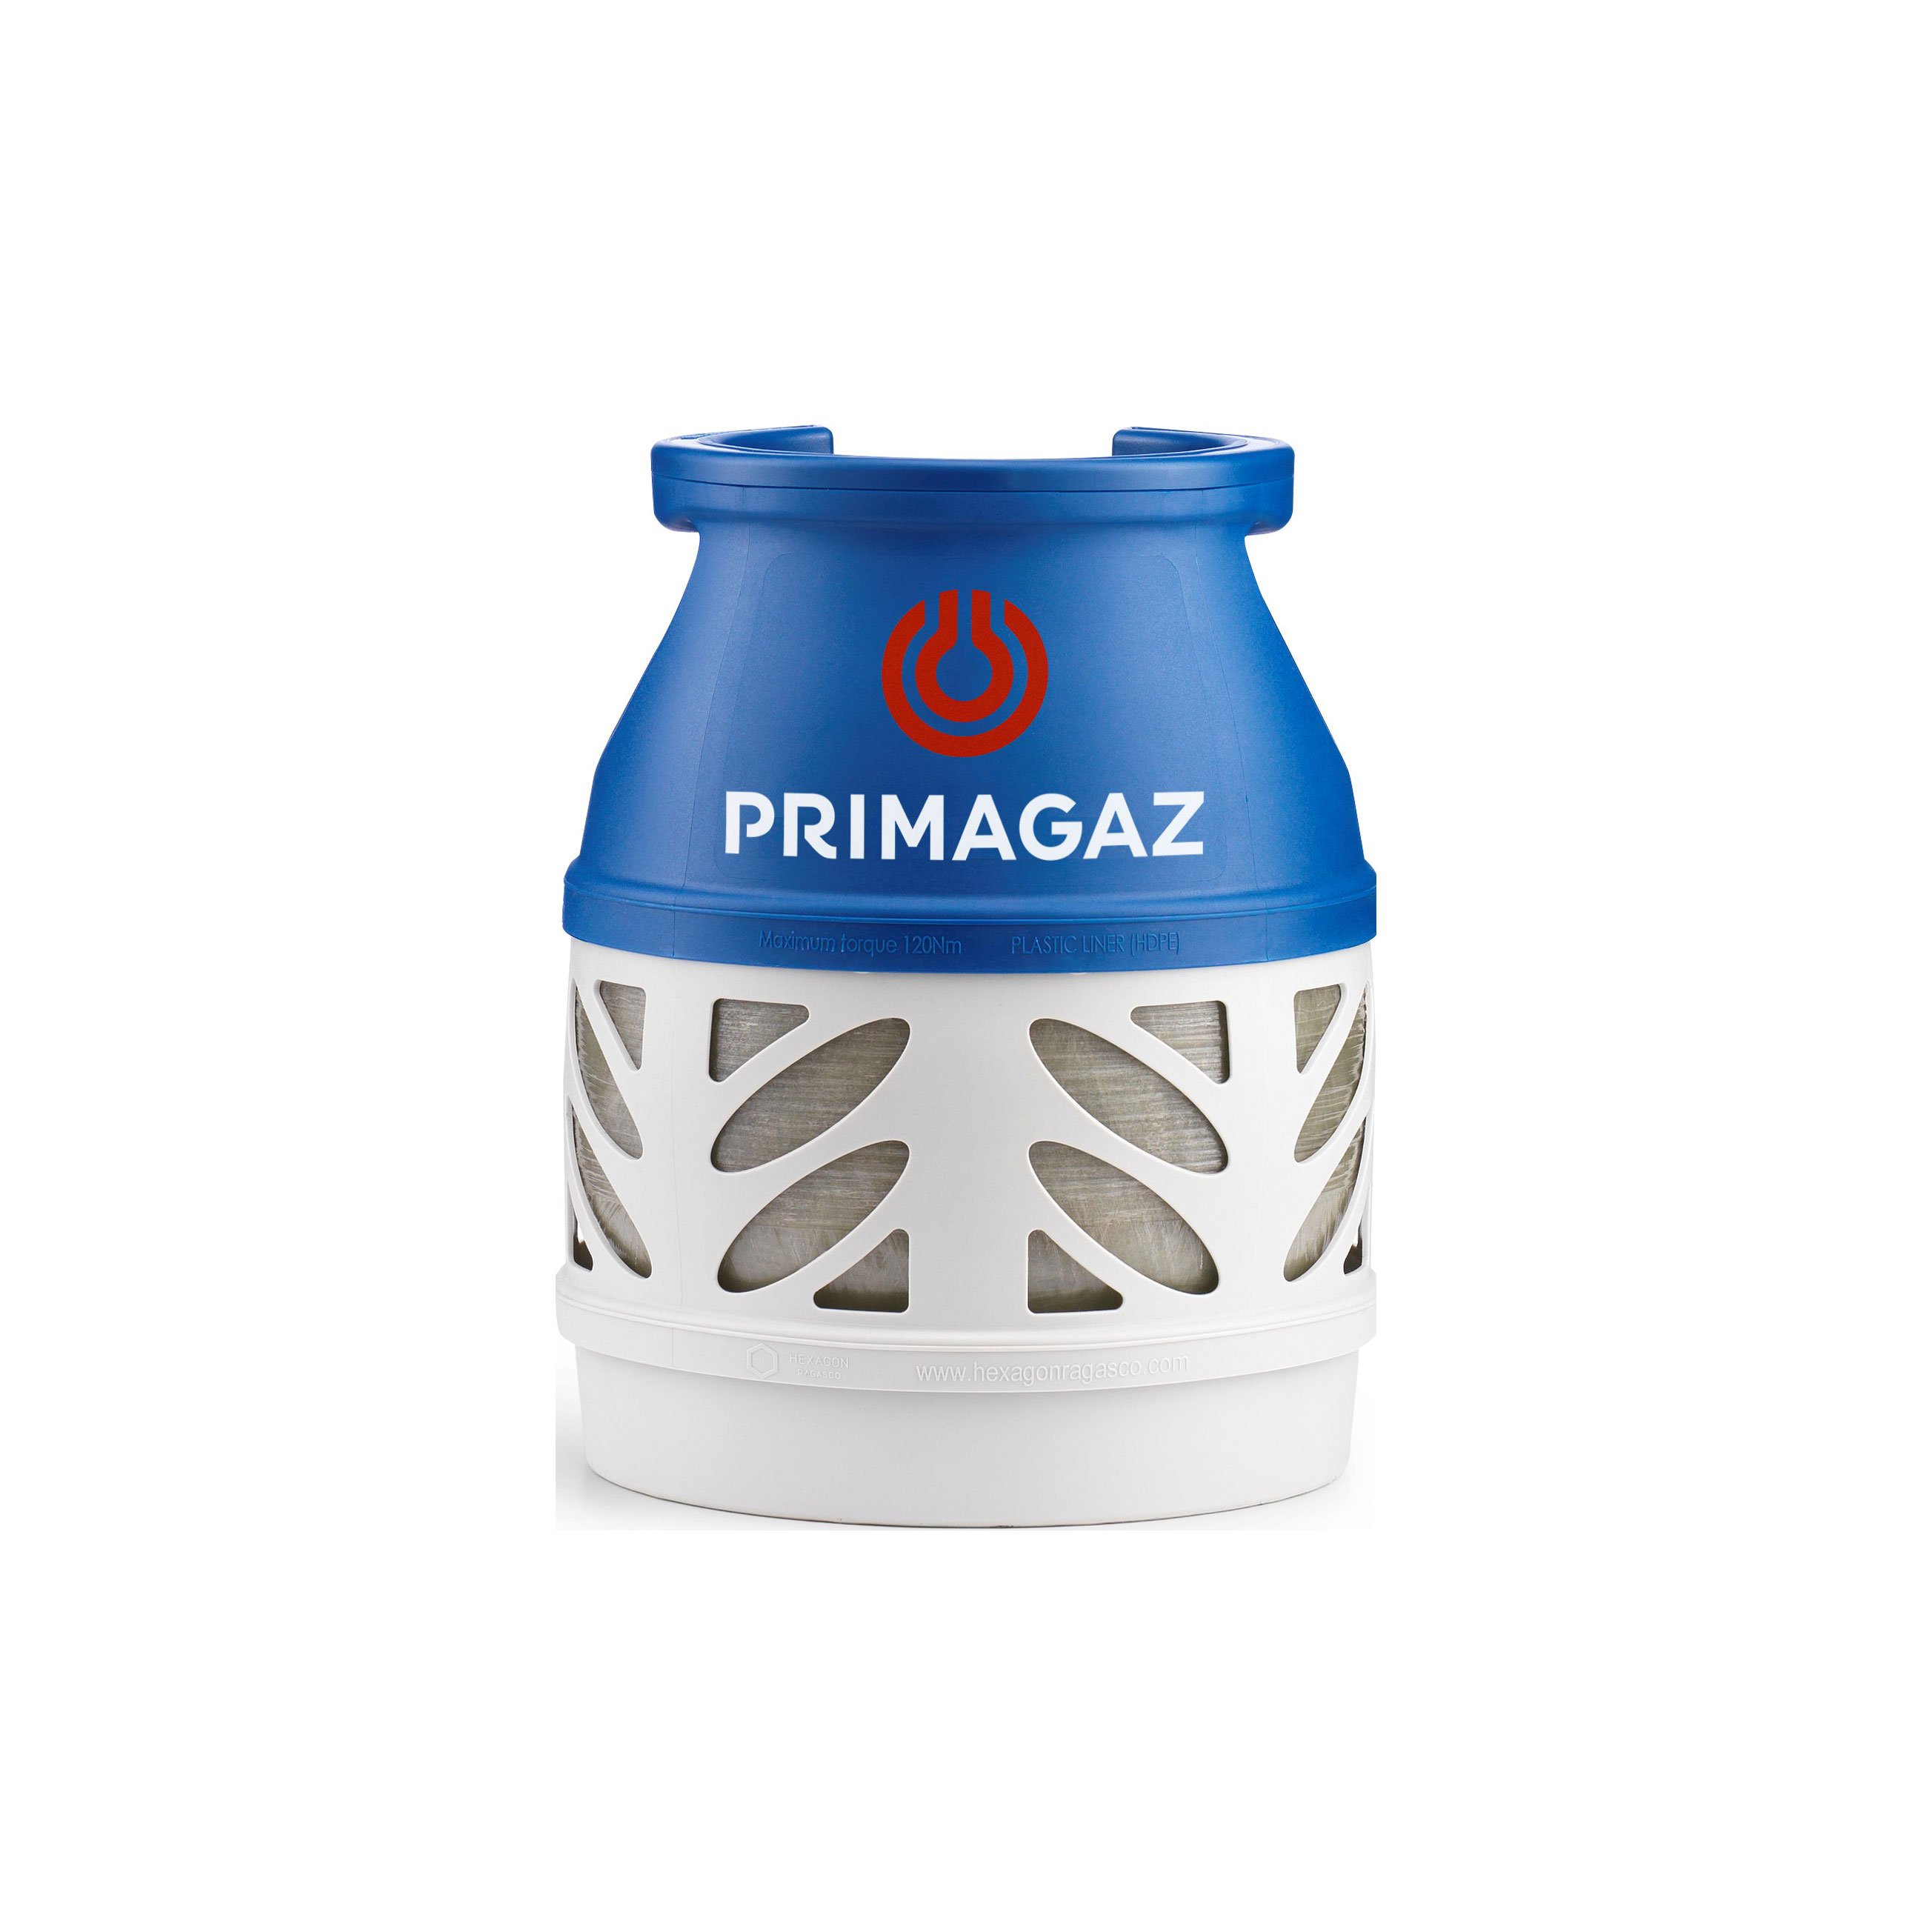 Billiga Tomflaska (exkl gasol) Primagaz PK5 - Säljs endast i butik online på nätet